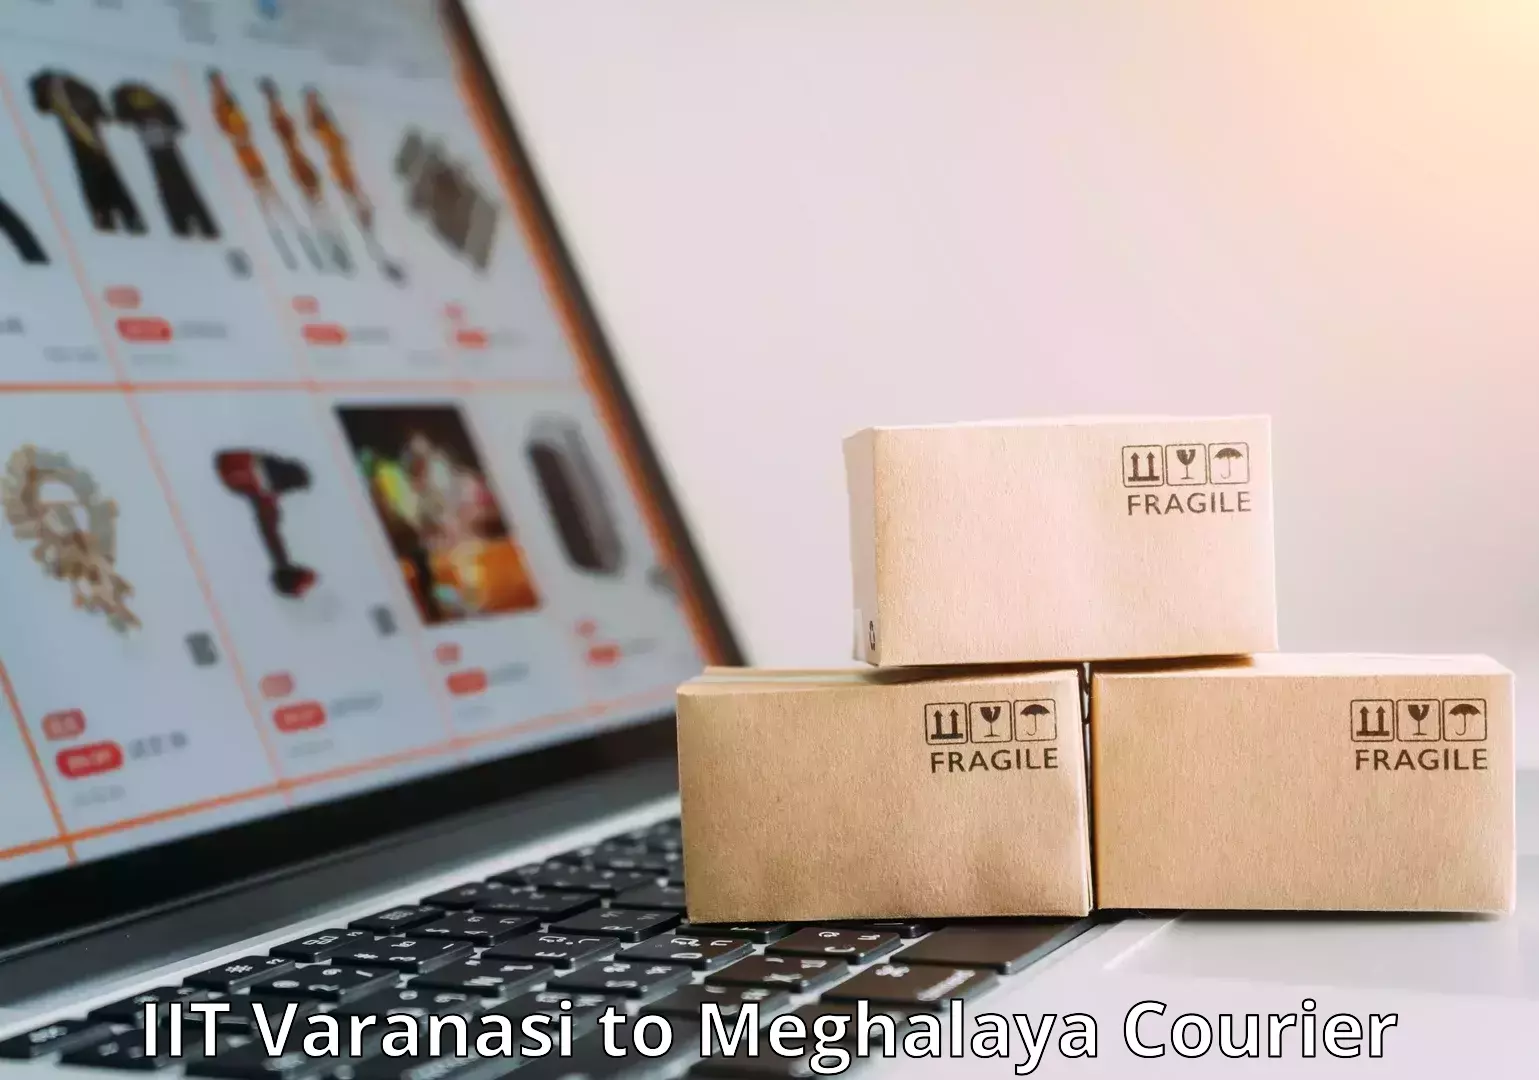 Luggage shipment tracking in IIT Varanasi to Meghalaya